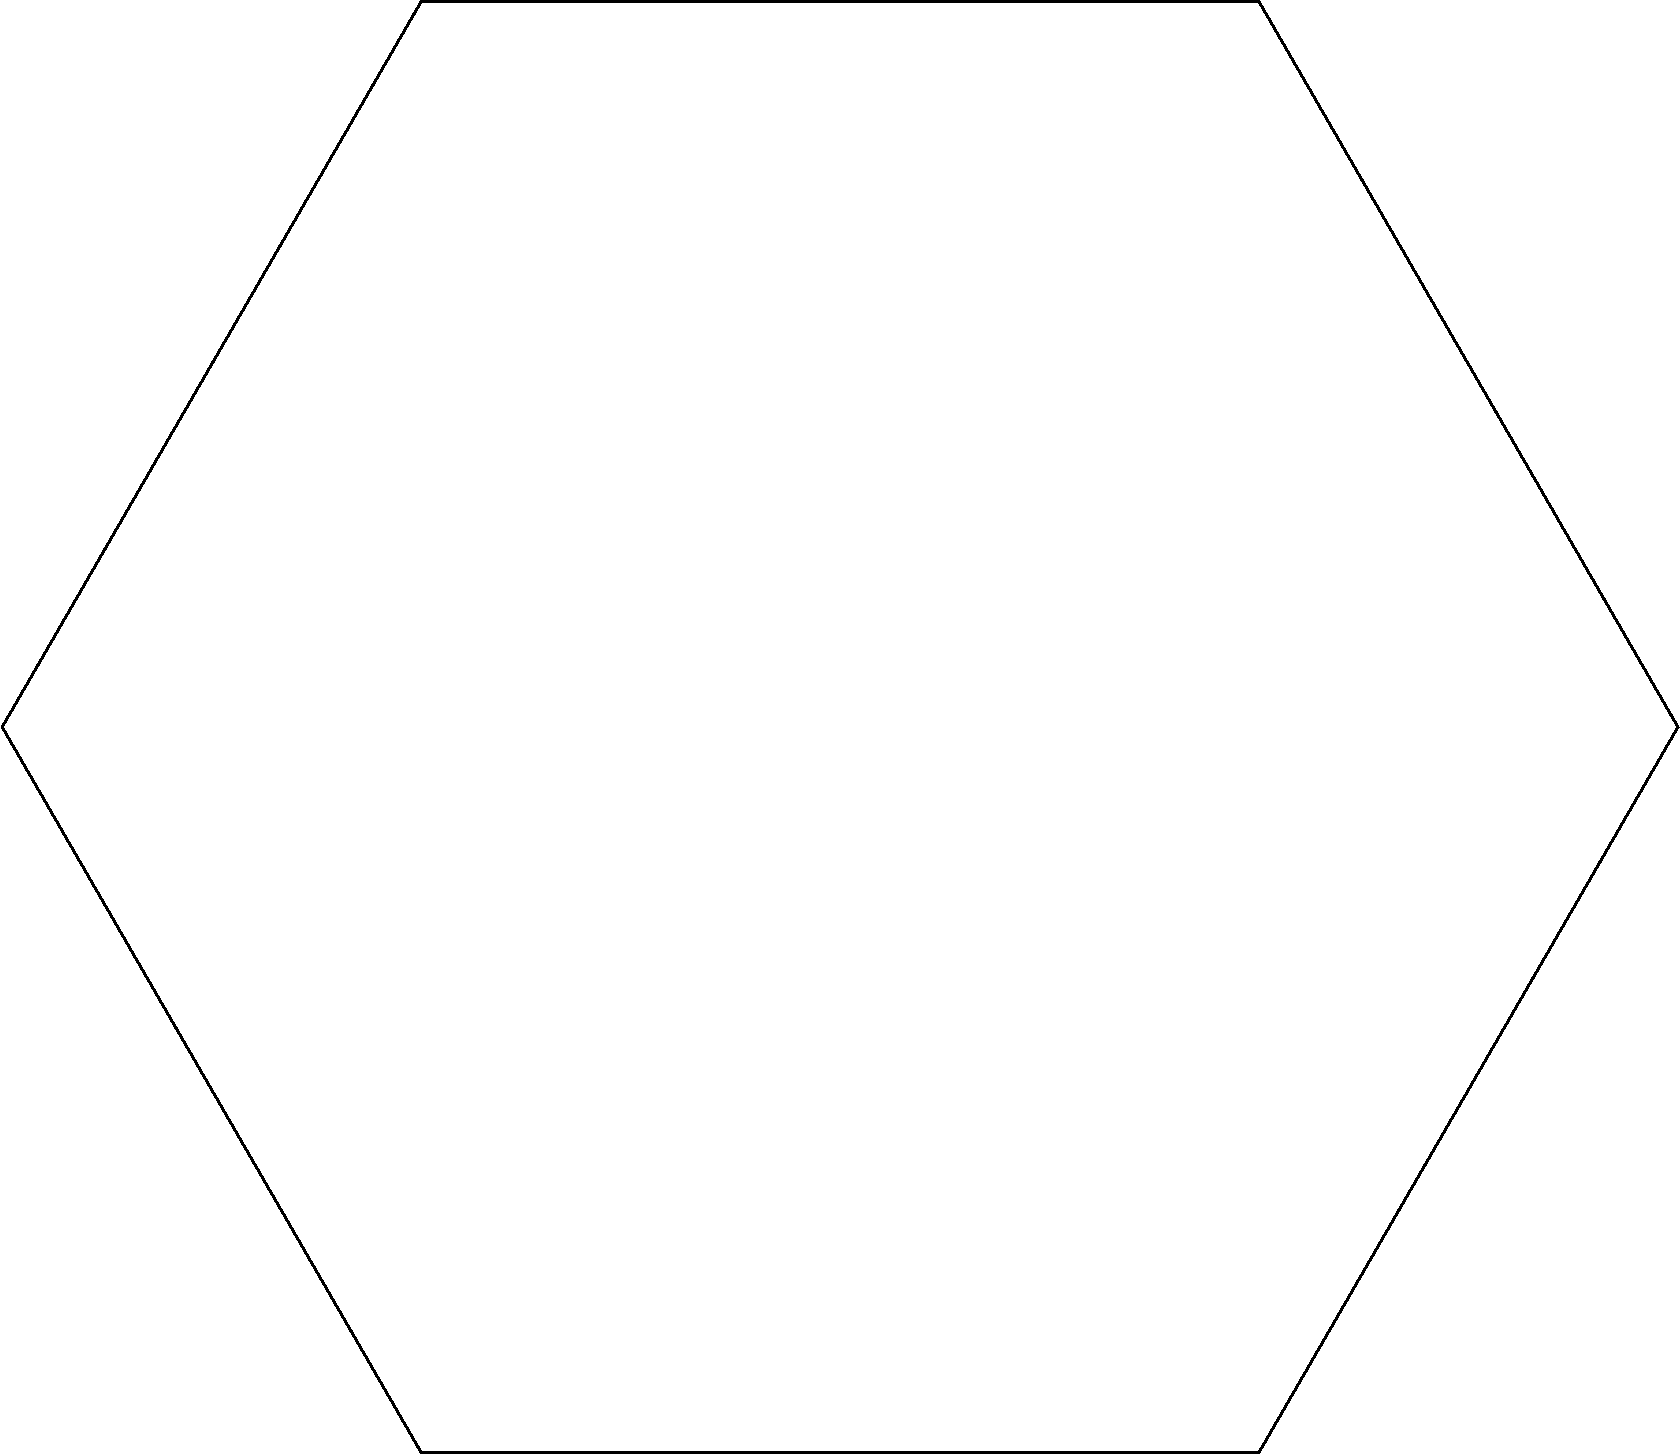 Шестиугольник 27 х 23 см, переплетный картон для основы для создания интерьерного декора, от LeoMammy